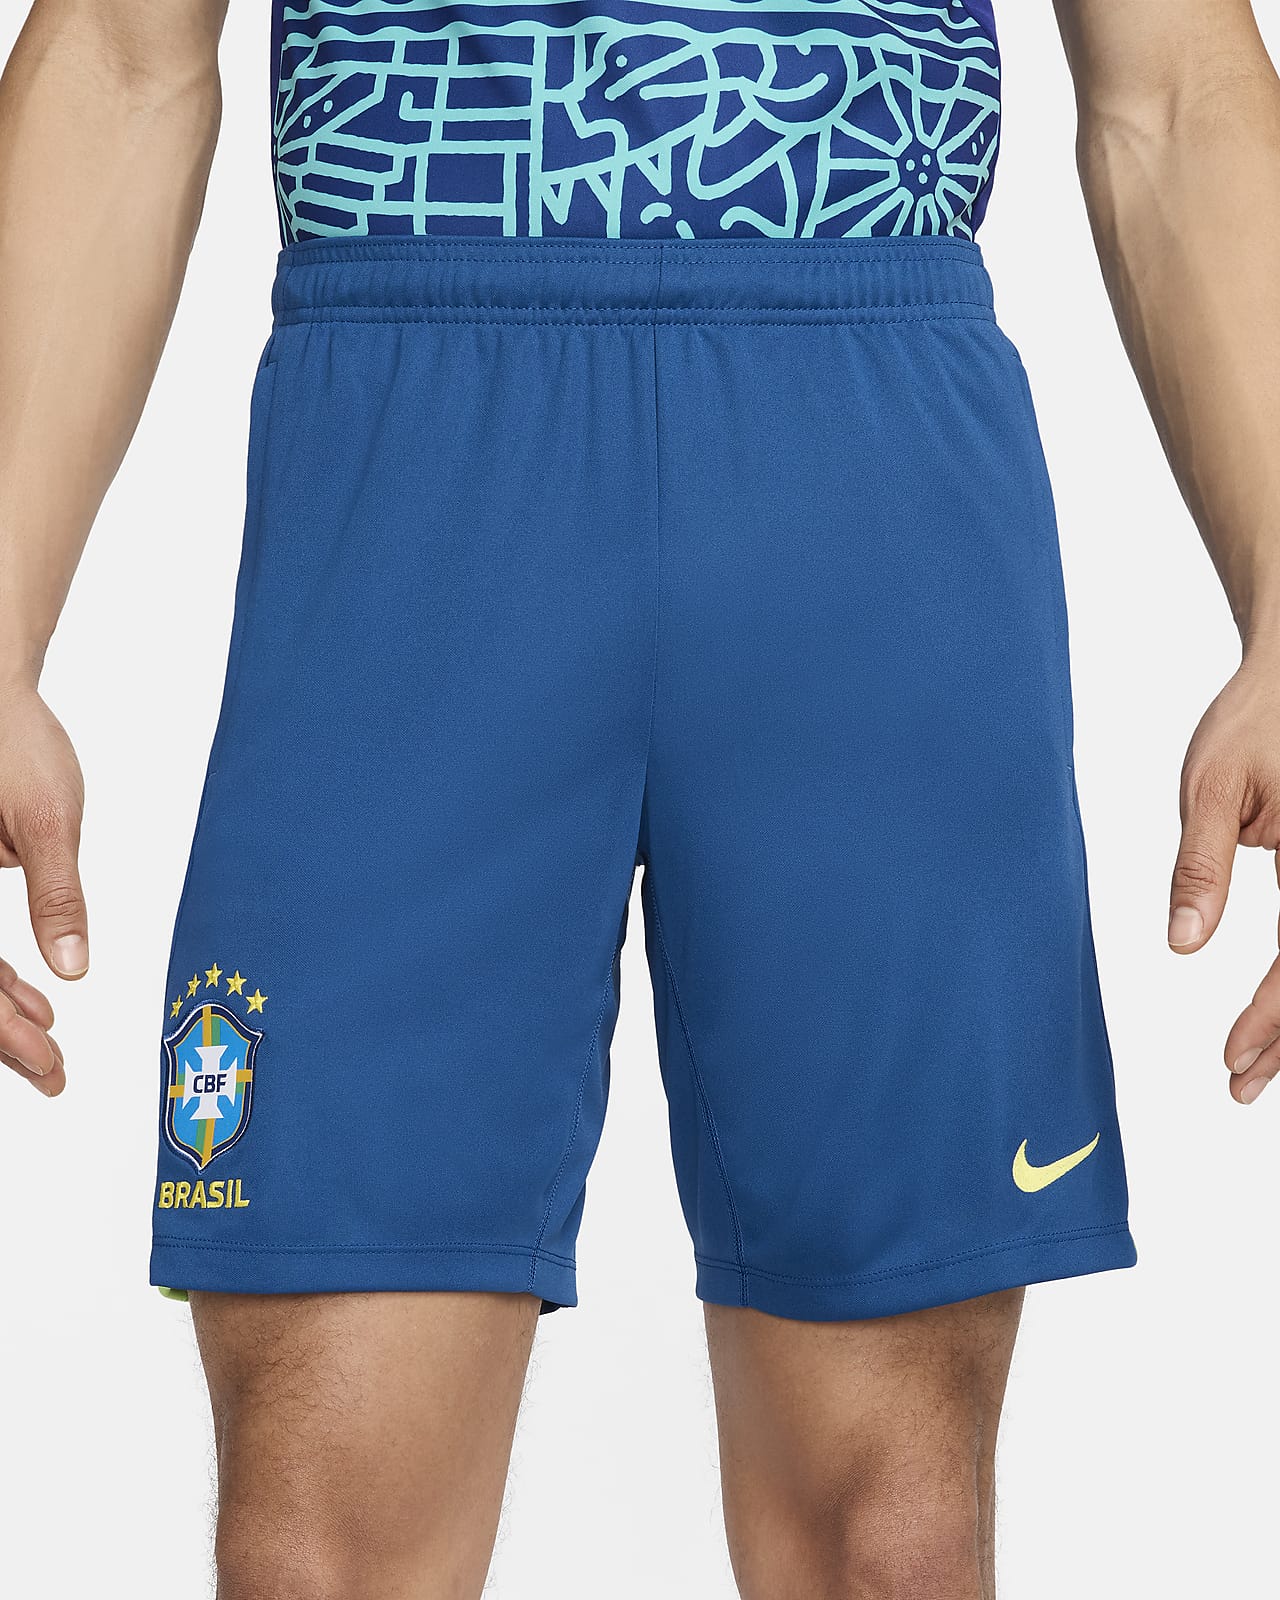 Brazil Academy Pro Men's Nike Dri-FIT Soccer Knit Shorts